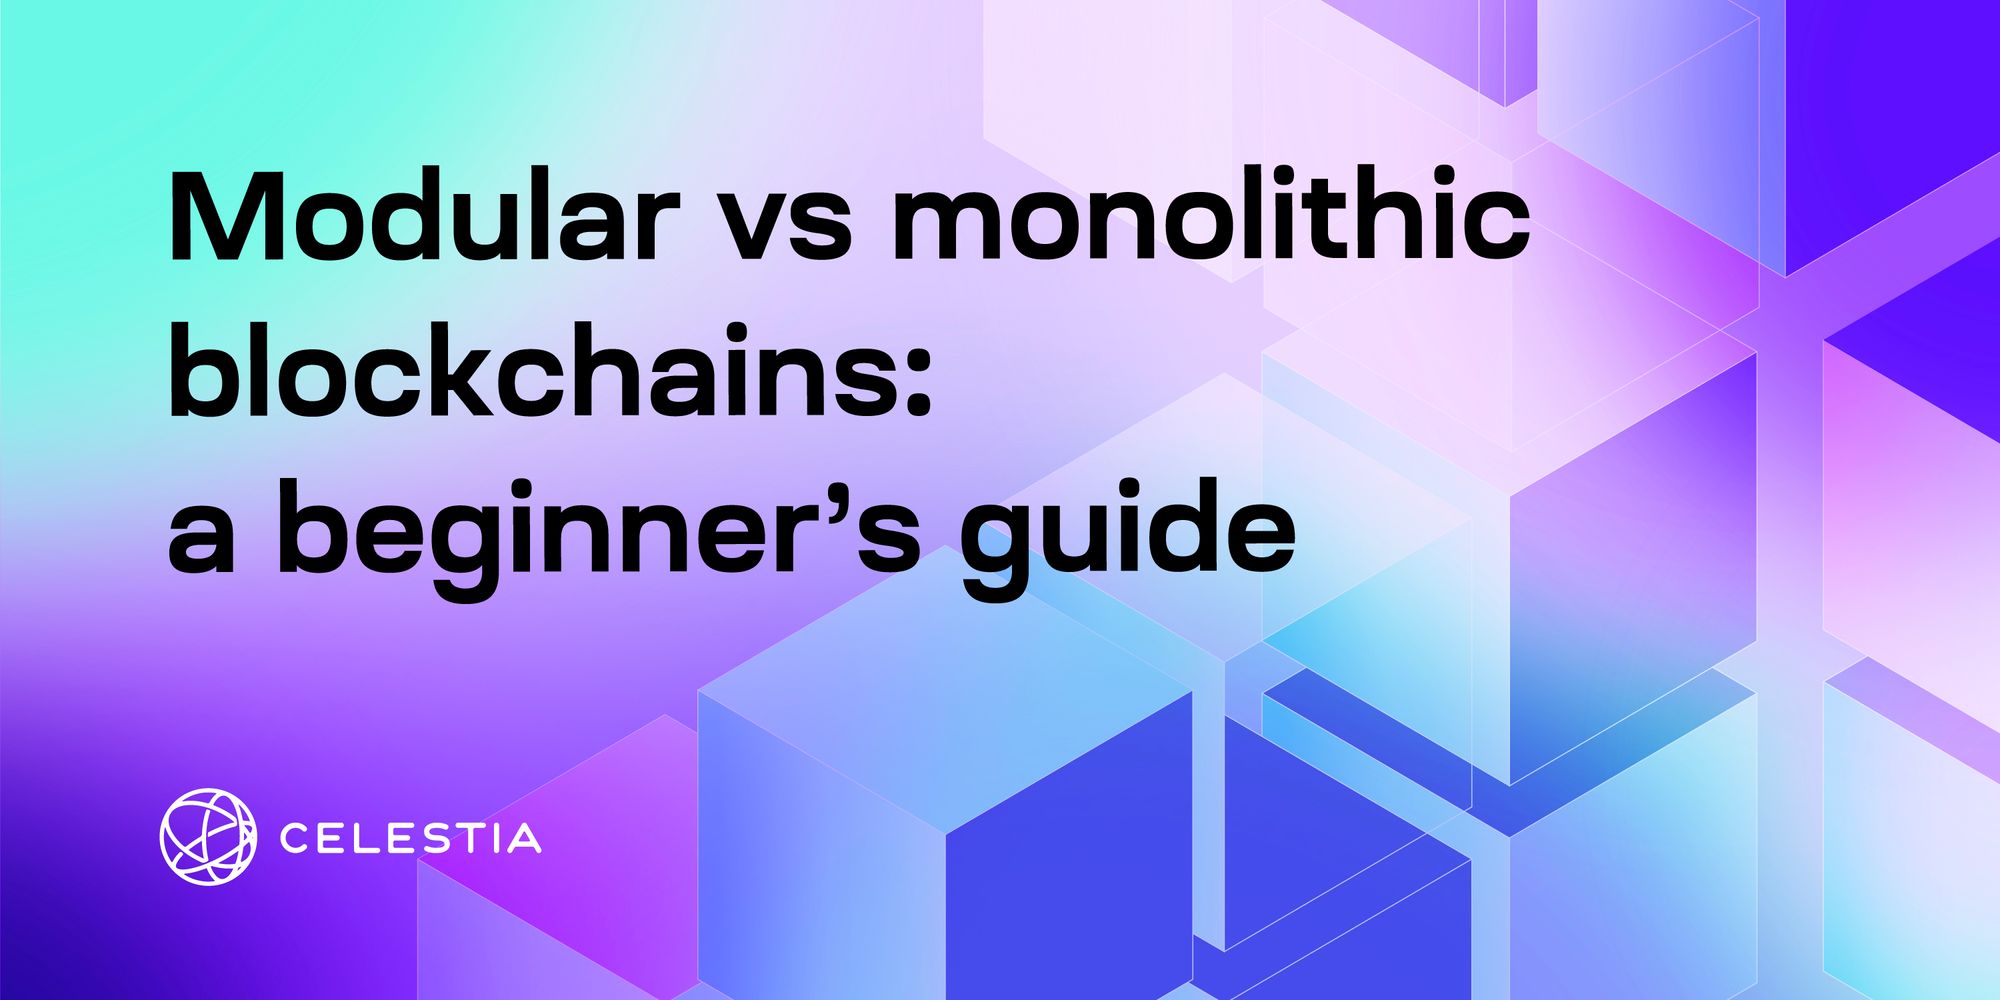 Modular vs monolithic: a beginner's guide